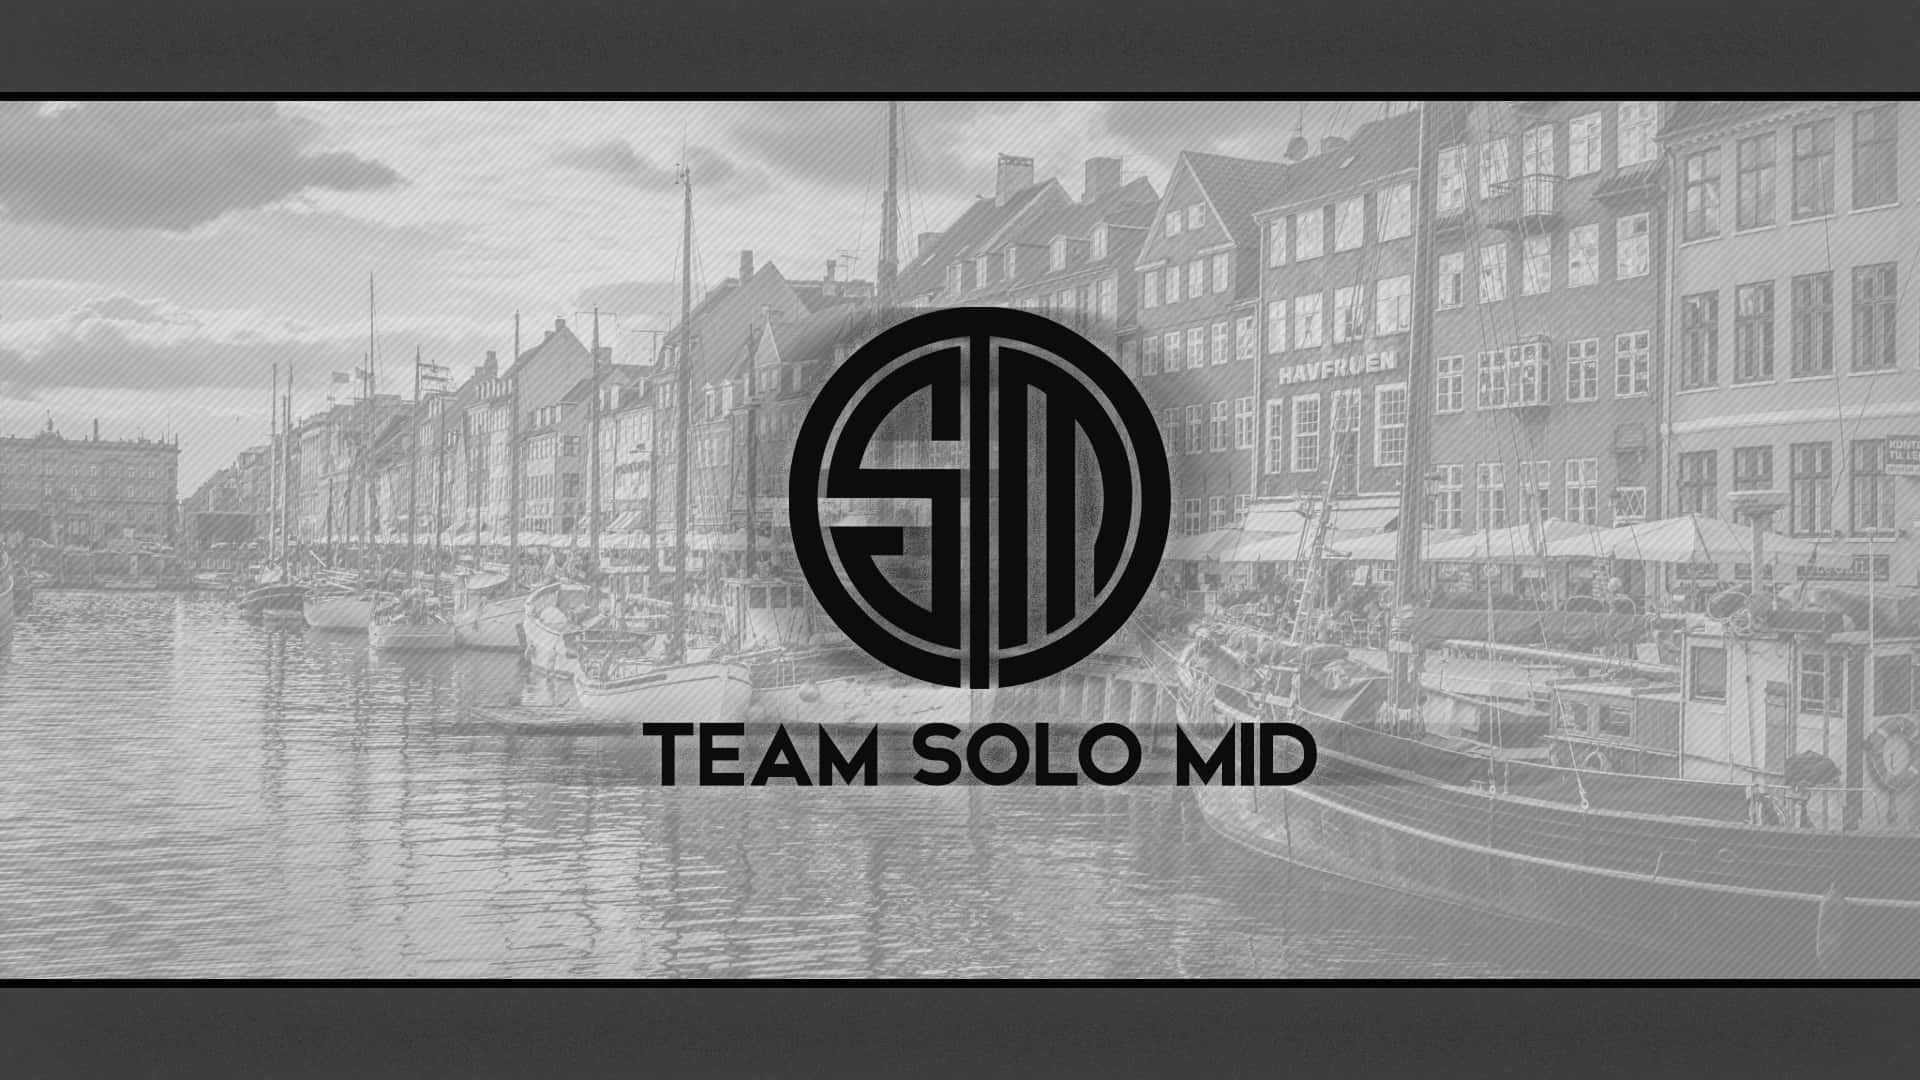 Logoet for Team Solo Mid er klart synligt på dette tapet. Wallpaper